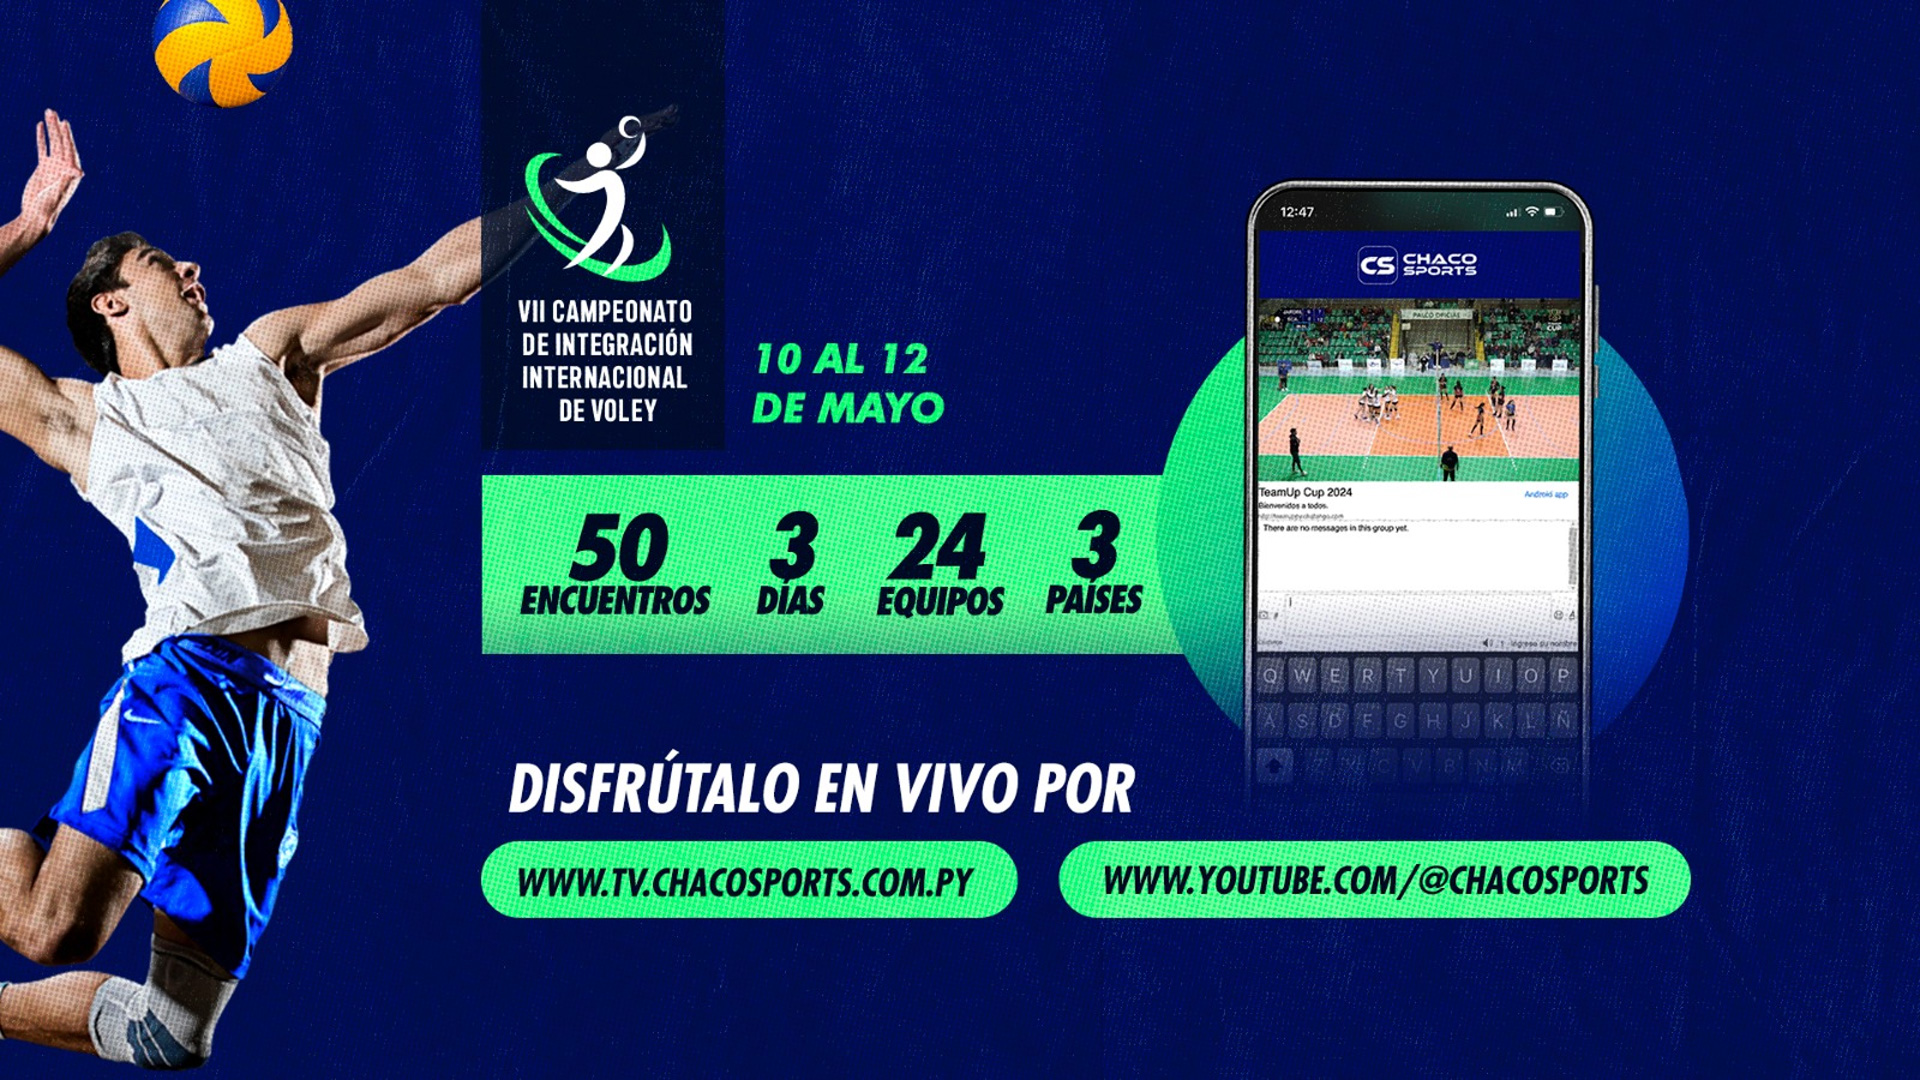 slide-campeonato-integracion-volley-internacional-chaco